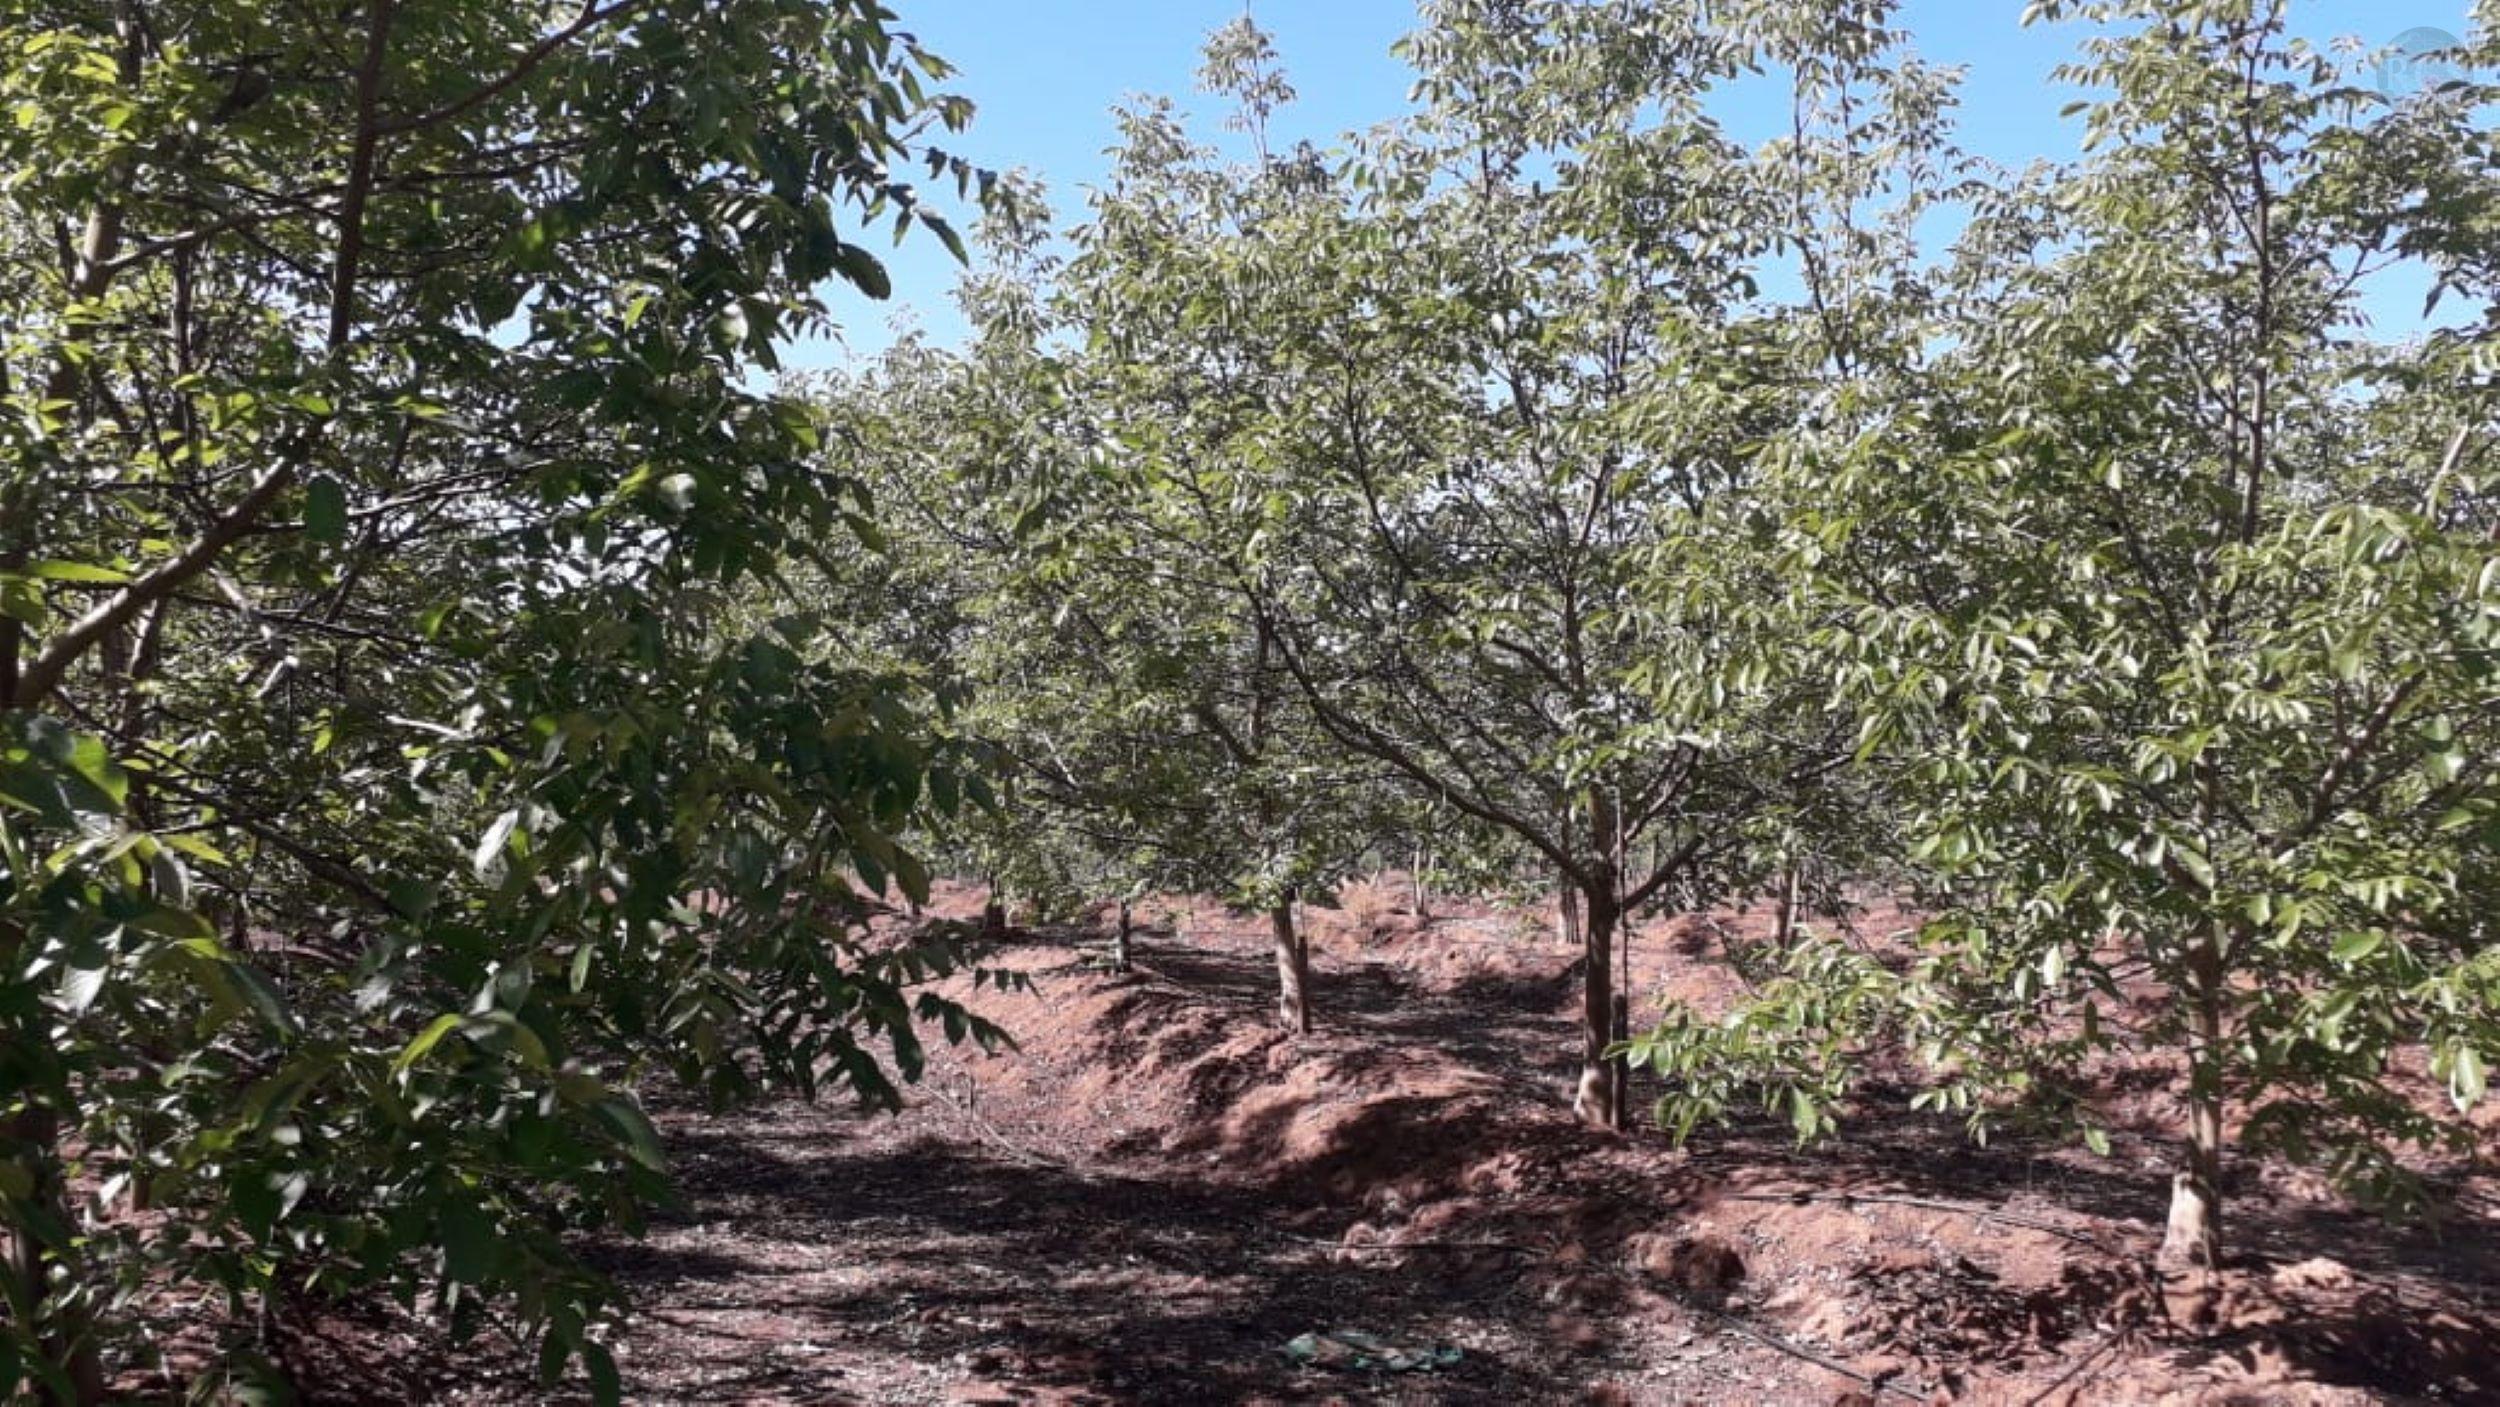 Vendo parcela de 15,81 hectareas con plantacion de nogal variedad chandler de 7 años